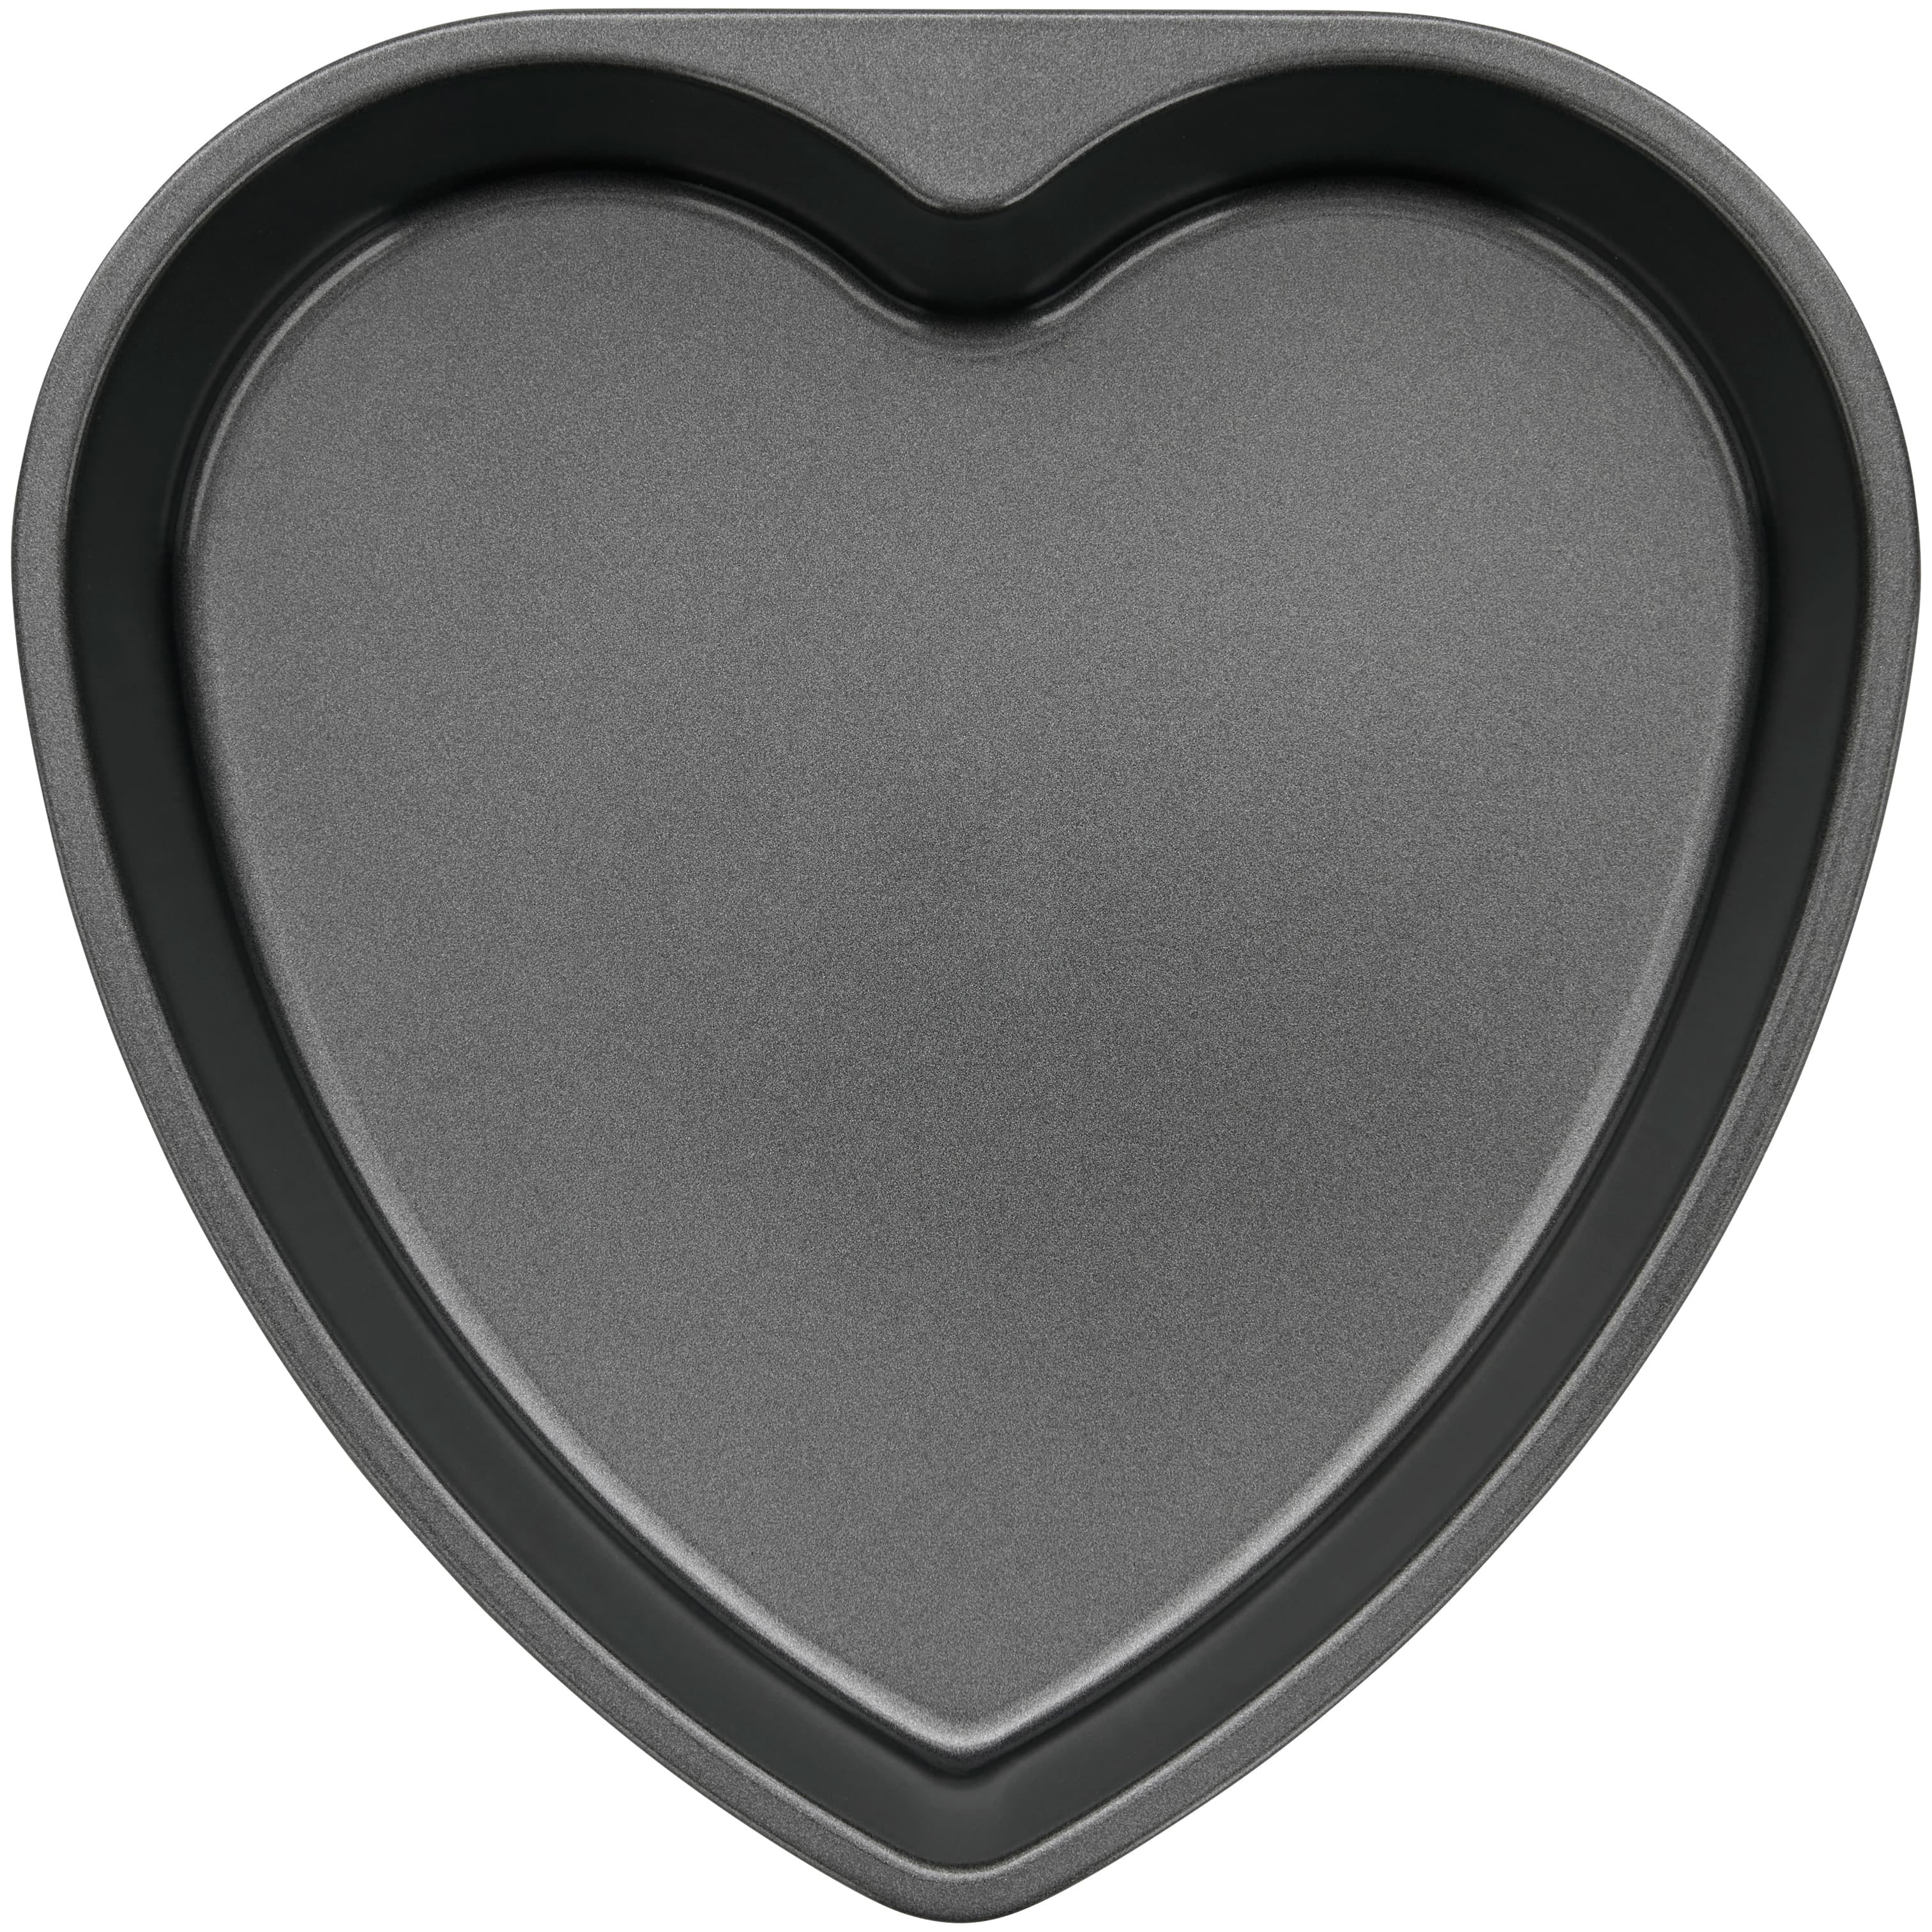 Mienca® Heart Shape Aluminum Cake Pan (Black)